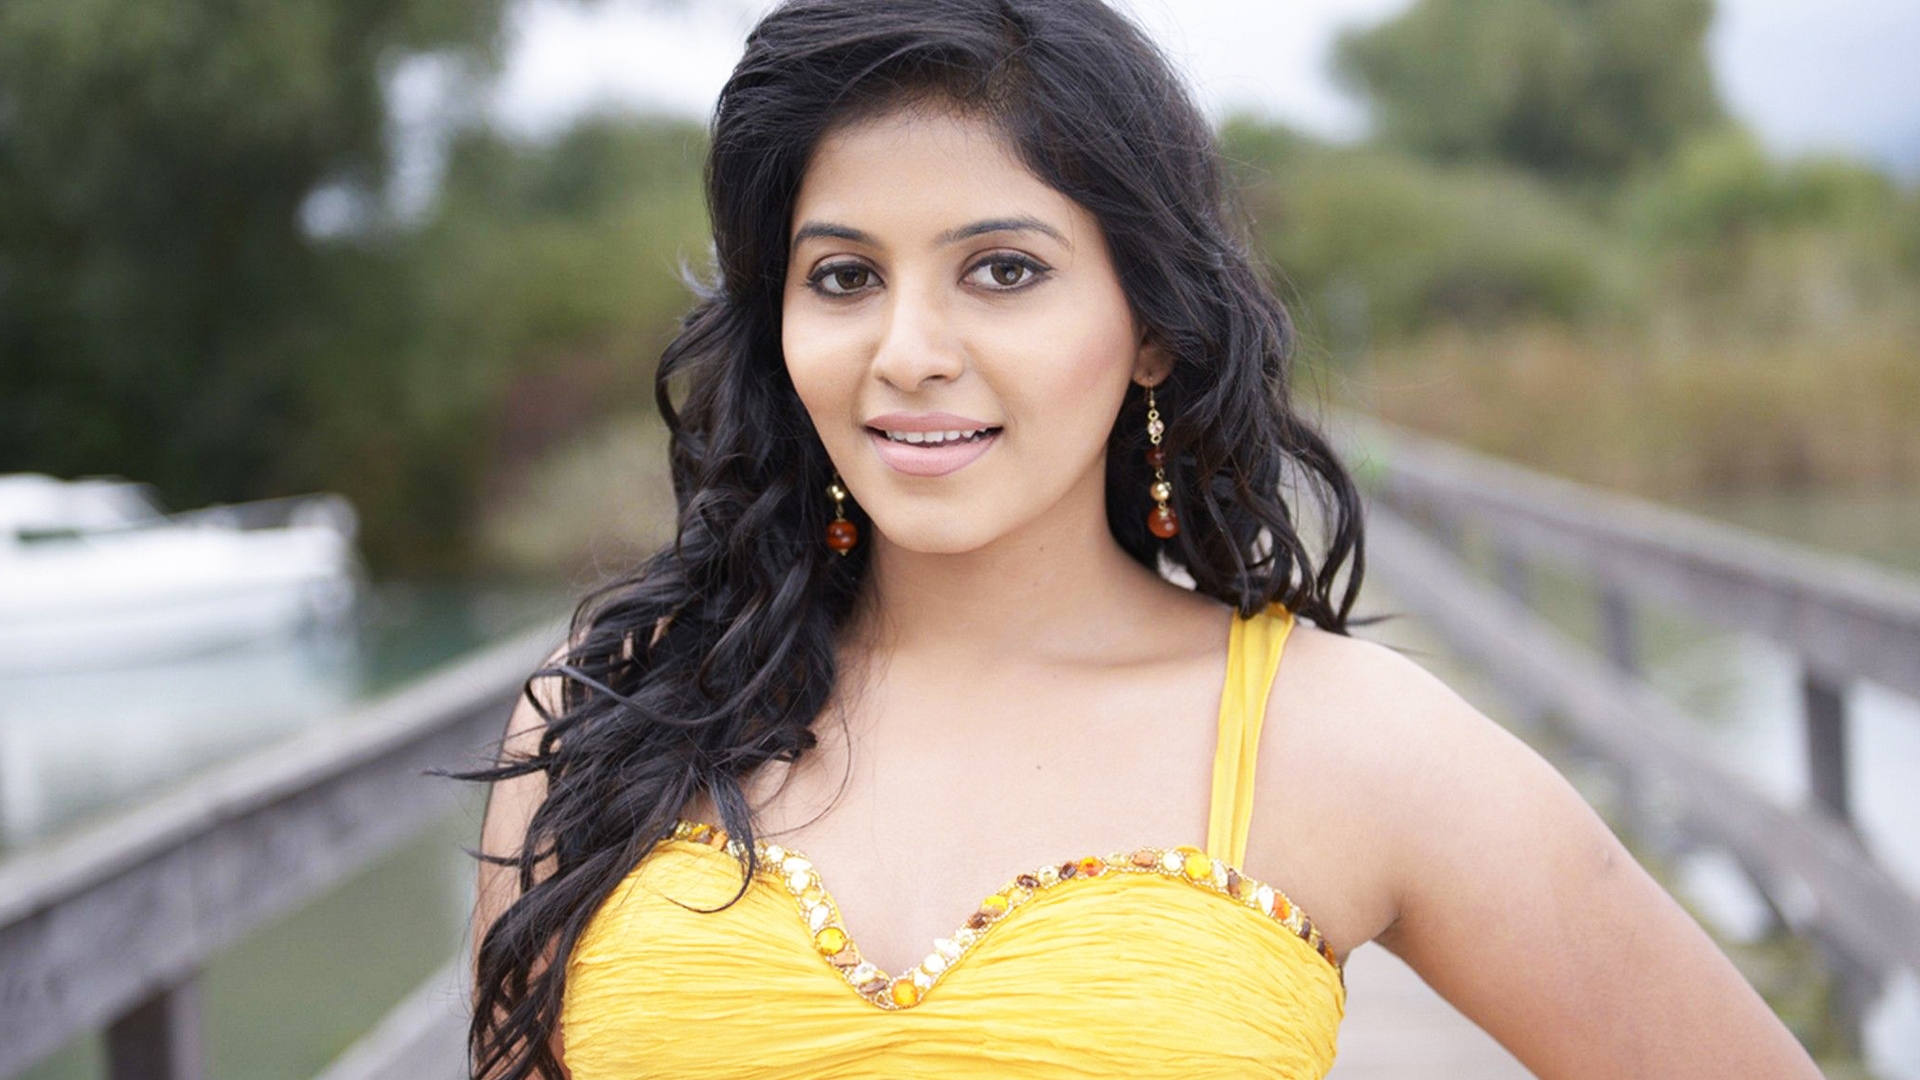 hd wallpaper tamil schauspielerin,haar,schönheit,gelb,frisur,fotoshooting